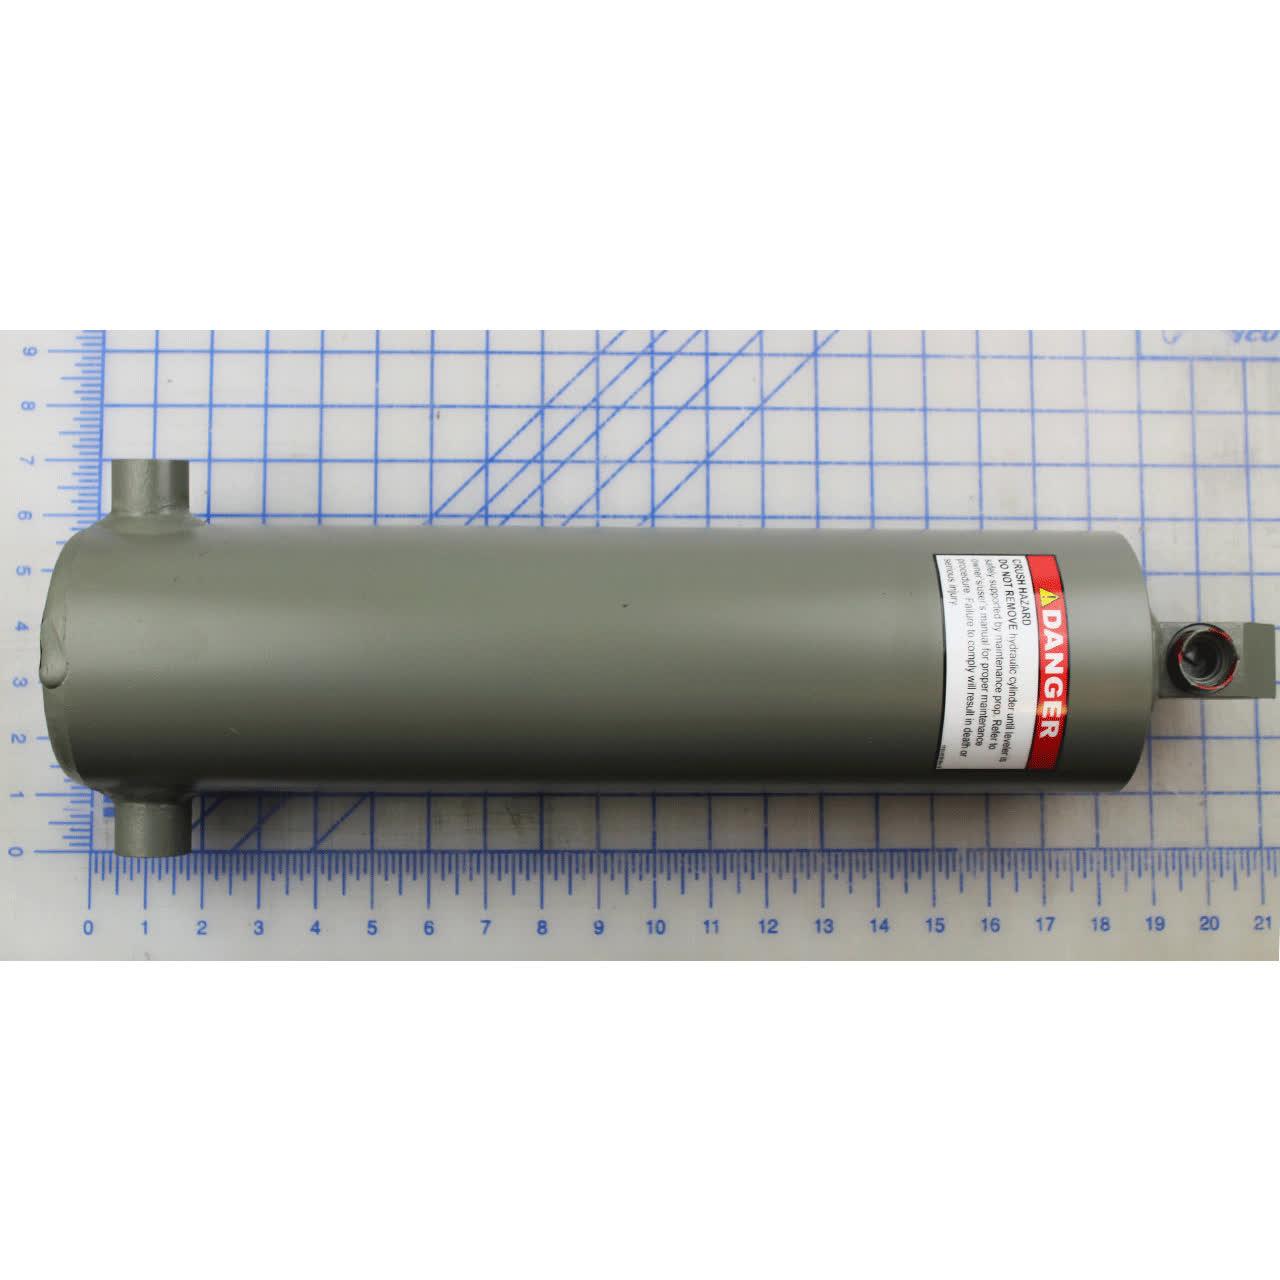 0525-0044 Cylinder, Platform, 17-1/2 In. (445 Mm) Barrel Length - Poweramp